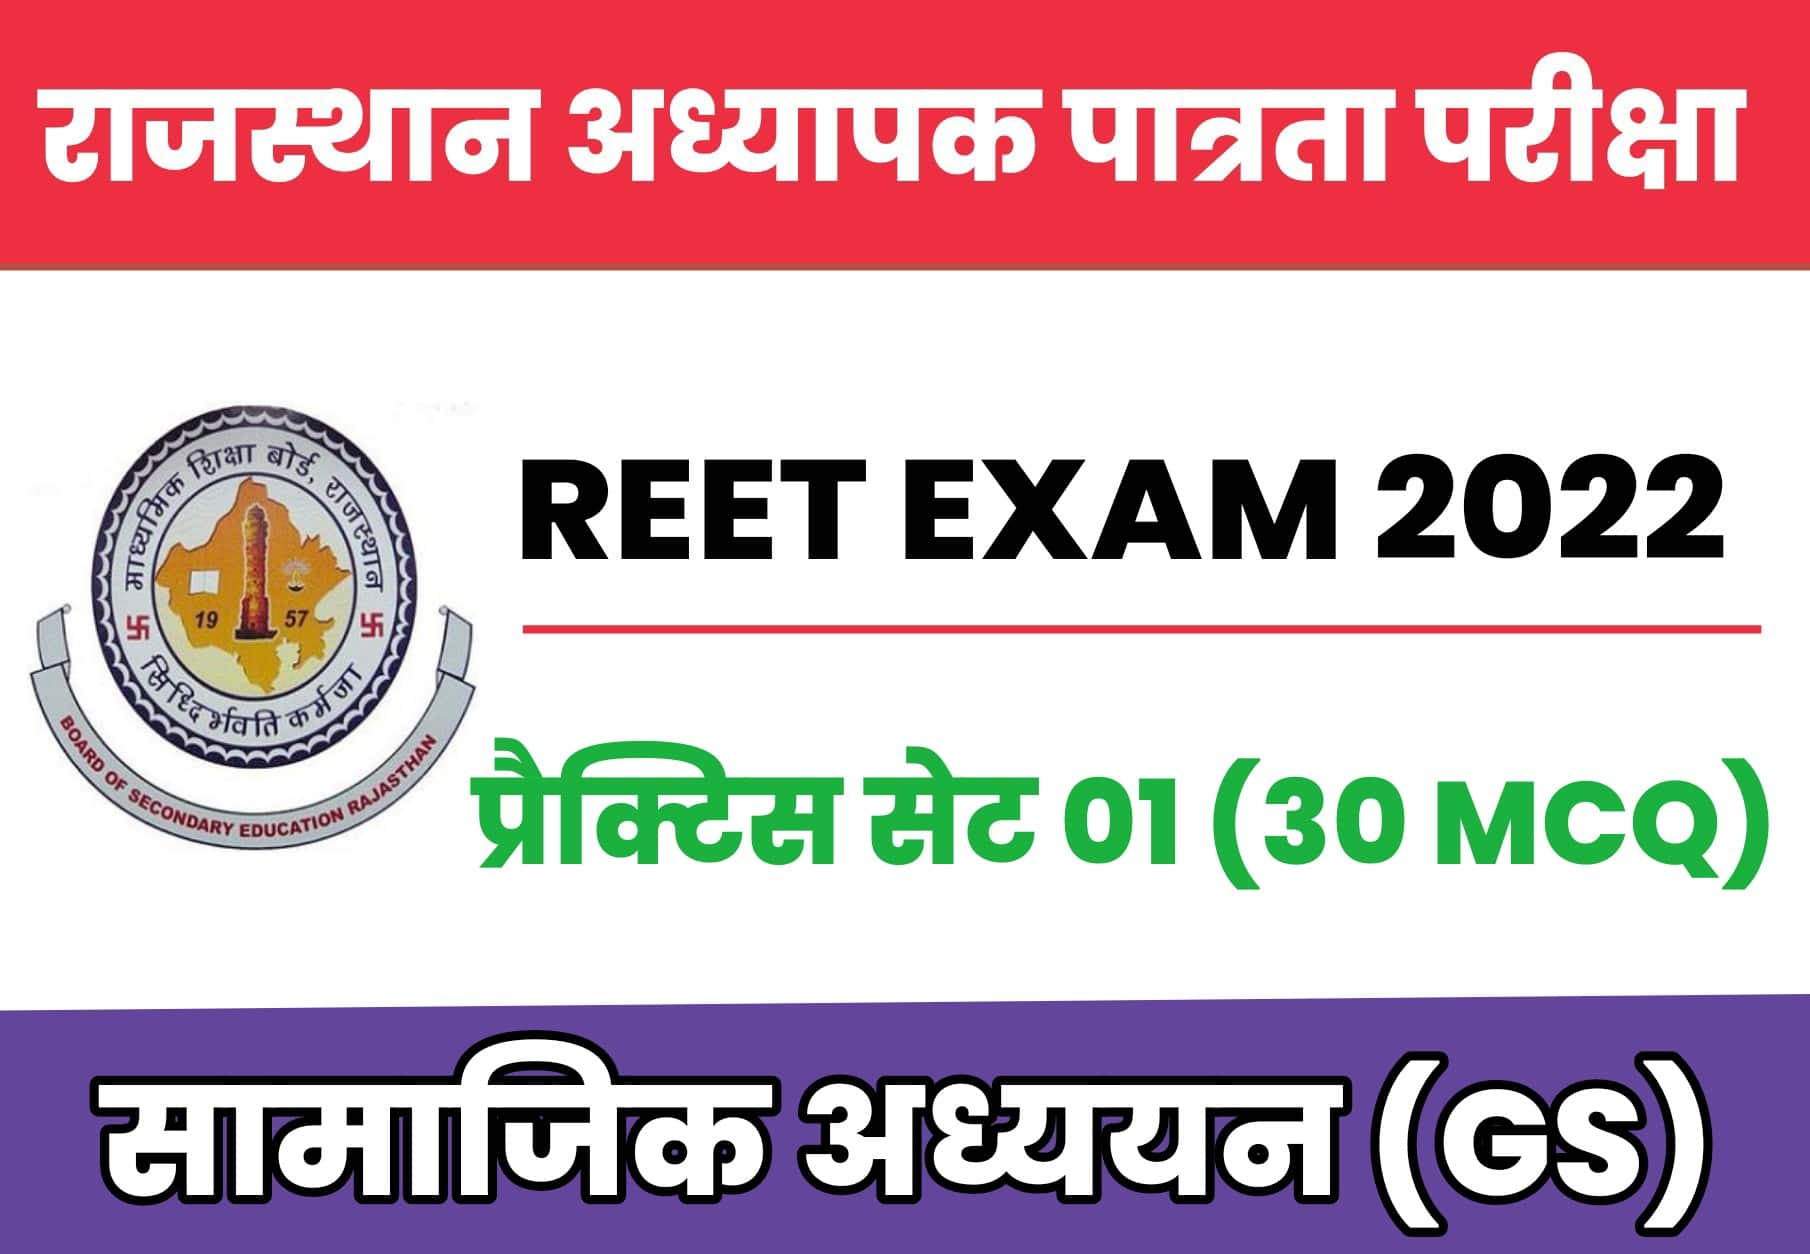 REET सामाजिक अध्ययन प्रैक्टिस सेट 01 : राजस्थान रीट परीक्षा में पूछें जा सकते है GK के ये प्रश्न, उम्मीदवार अवश्य पढ़ें